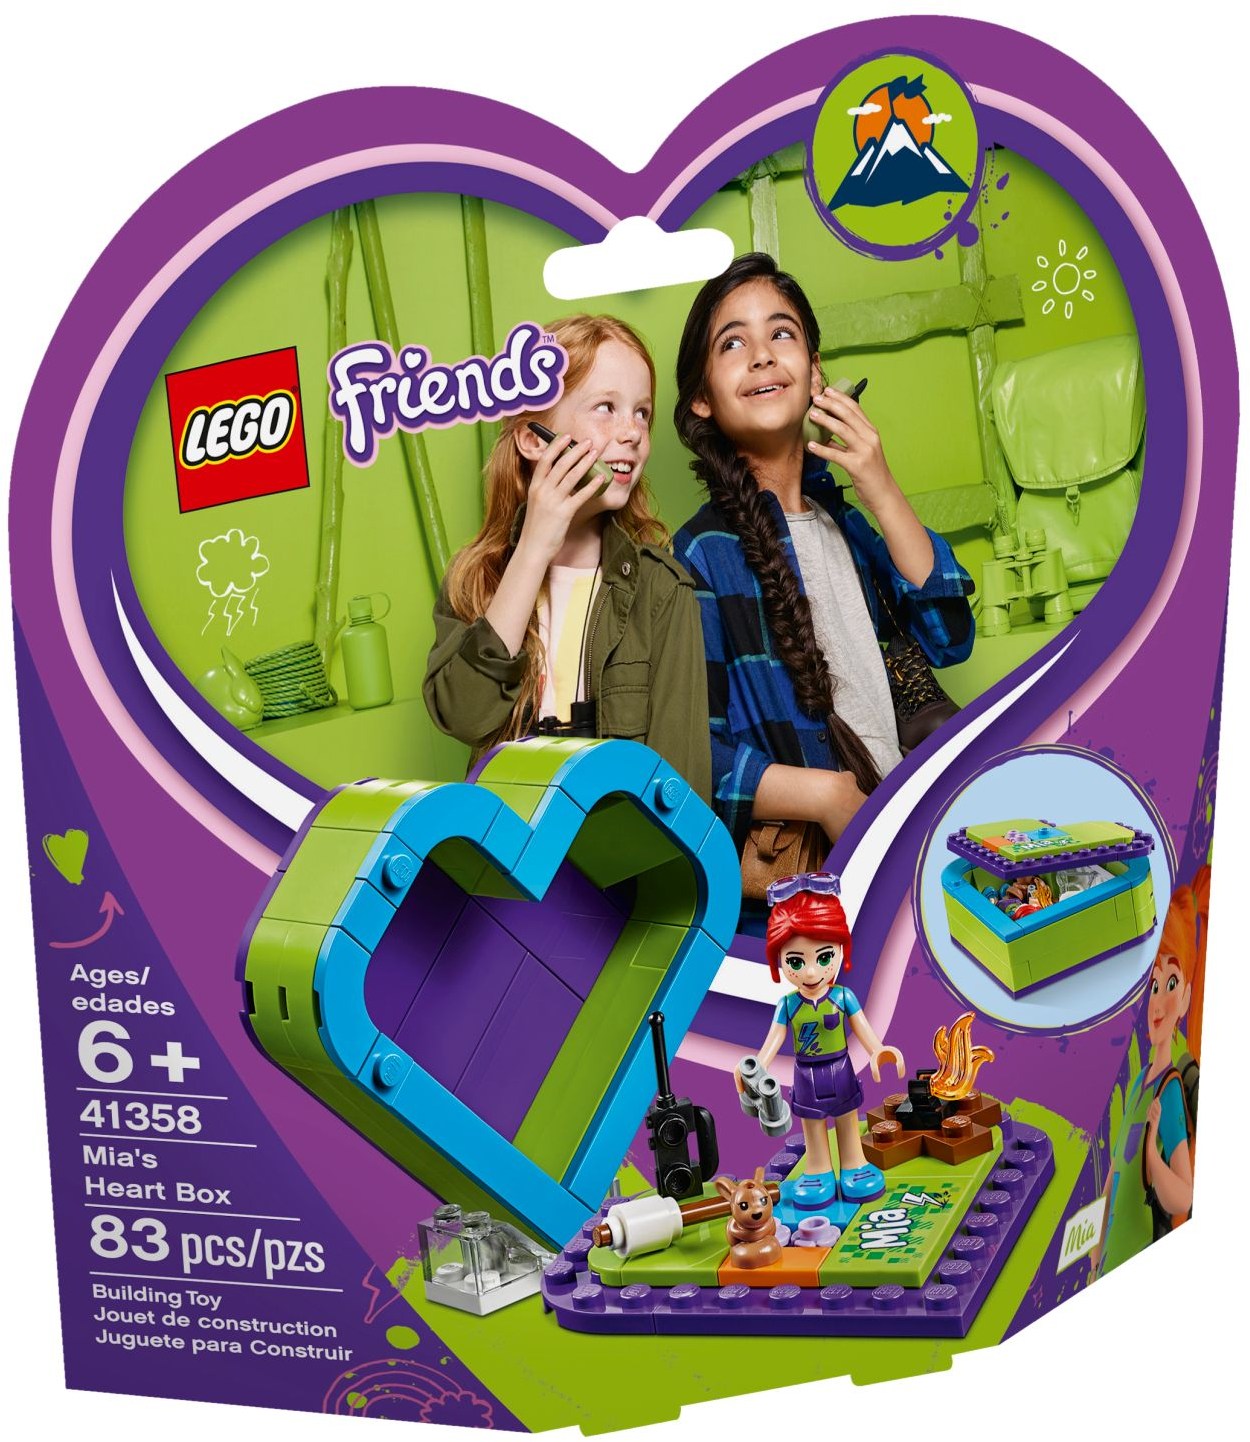 NEW Sealed LEGO 41358 FRIENDS Mia's Heart Box 83 Pcs 